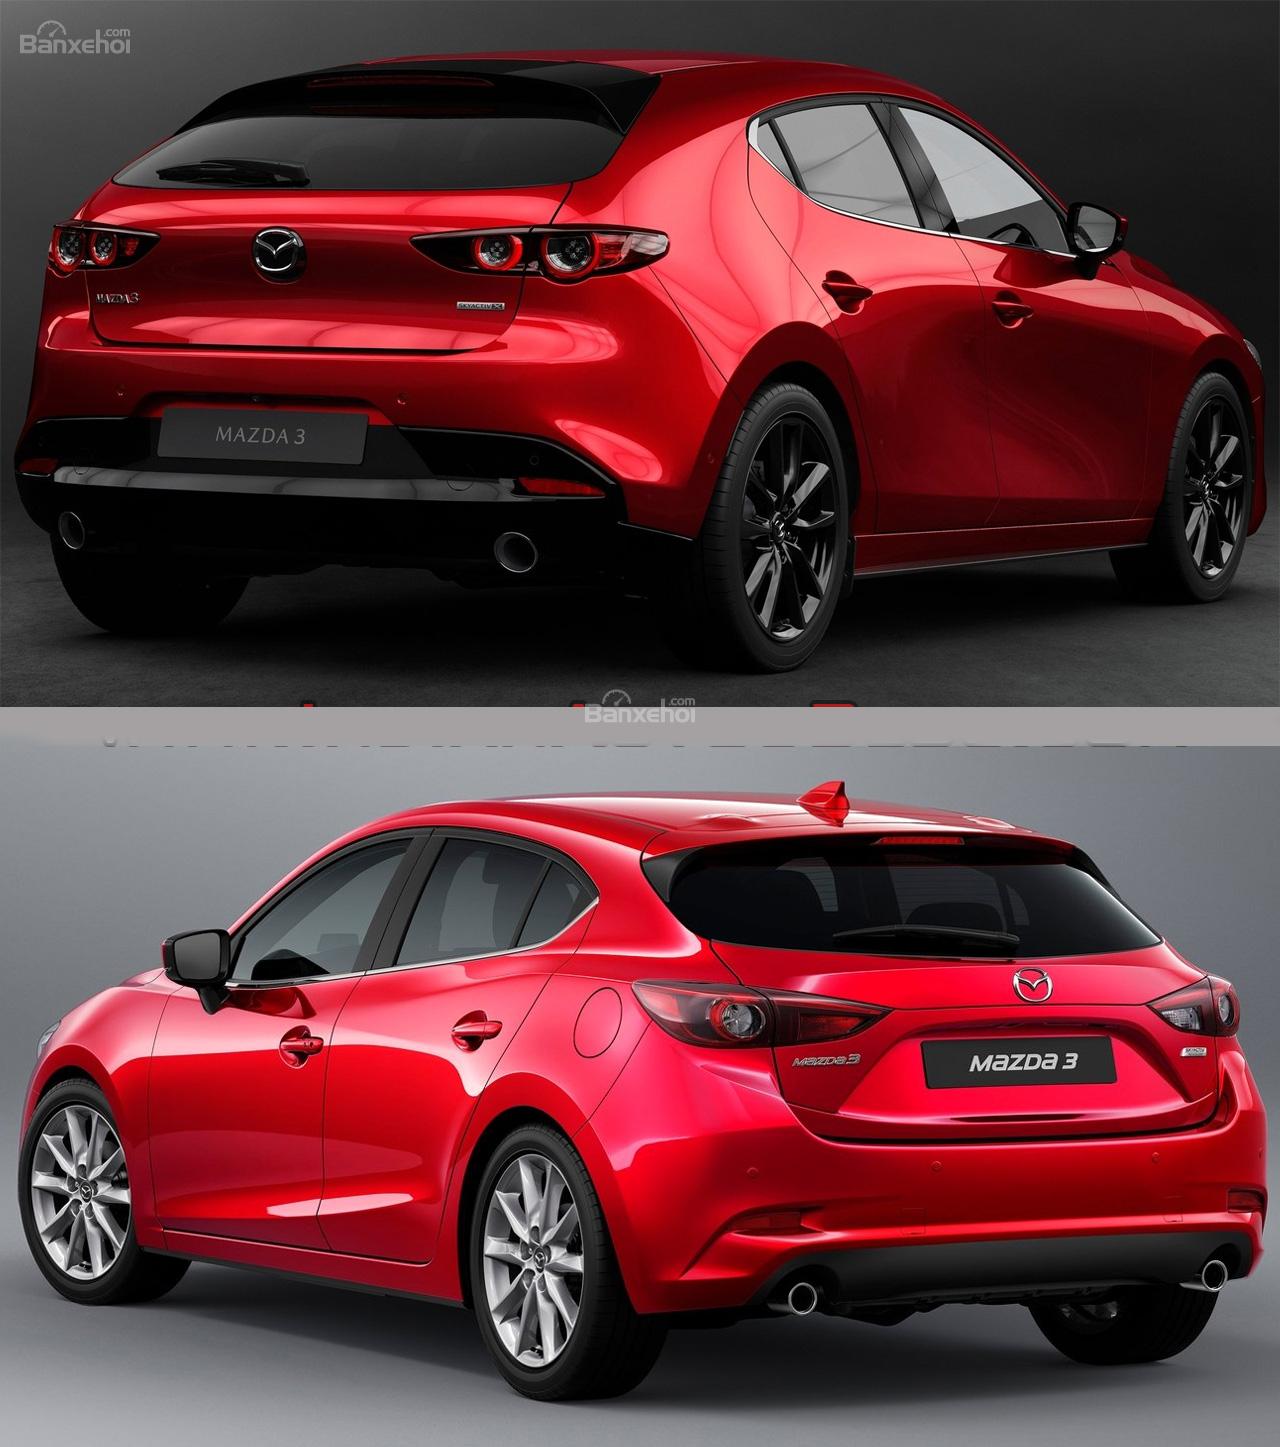 Mazda 3 2019: Chiếc xe Mazda 3 năm 2019 thể hiện sự sang trọng và đẳng cấp của một chiếc xe hoàn hảo. Được thiết kế bắt mắt và tinh tế, đây là mẫu xe đáng để bạn sở hữu và trải nghiệm.